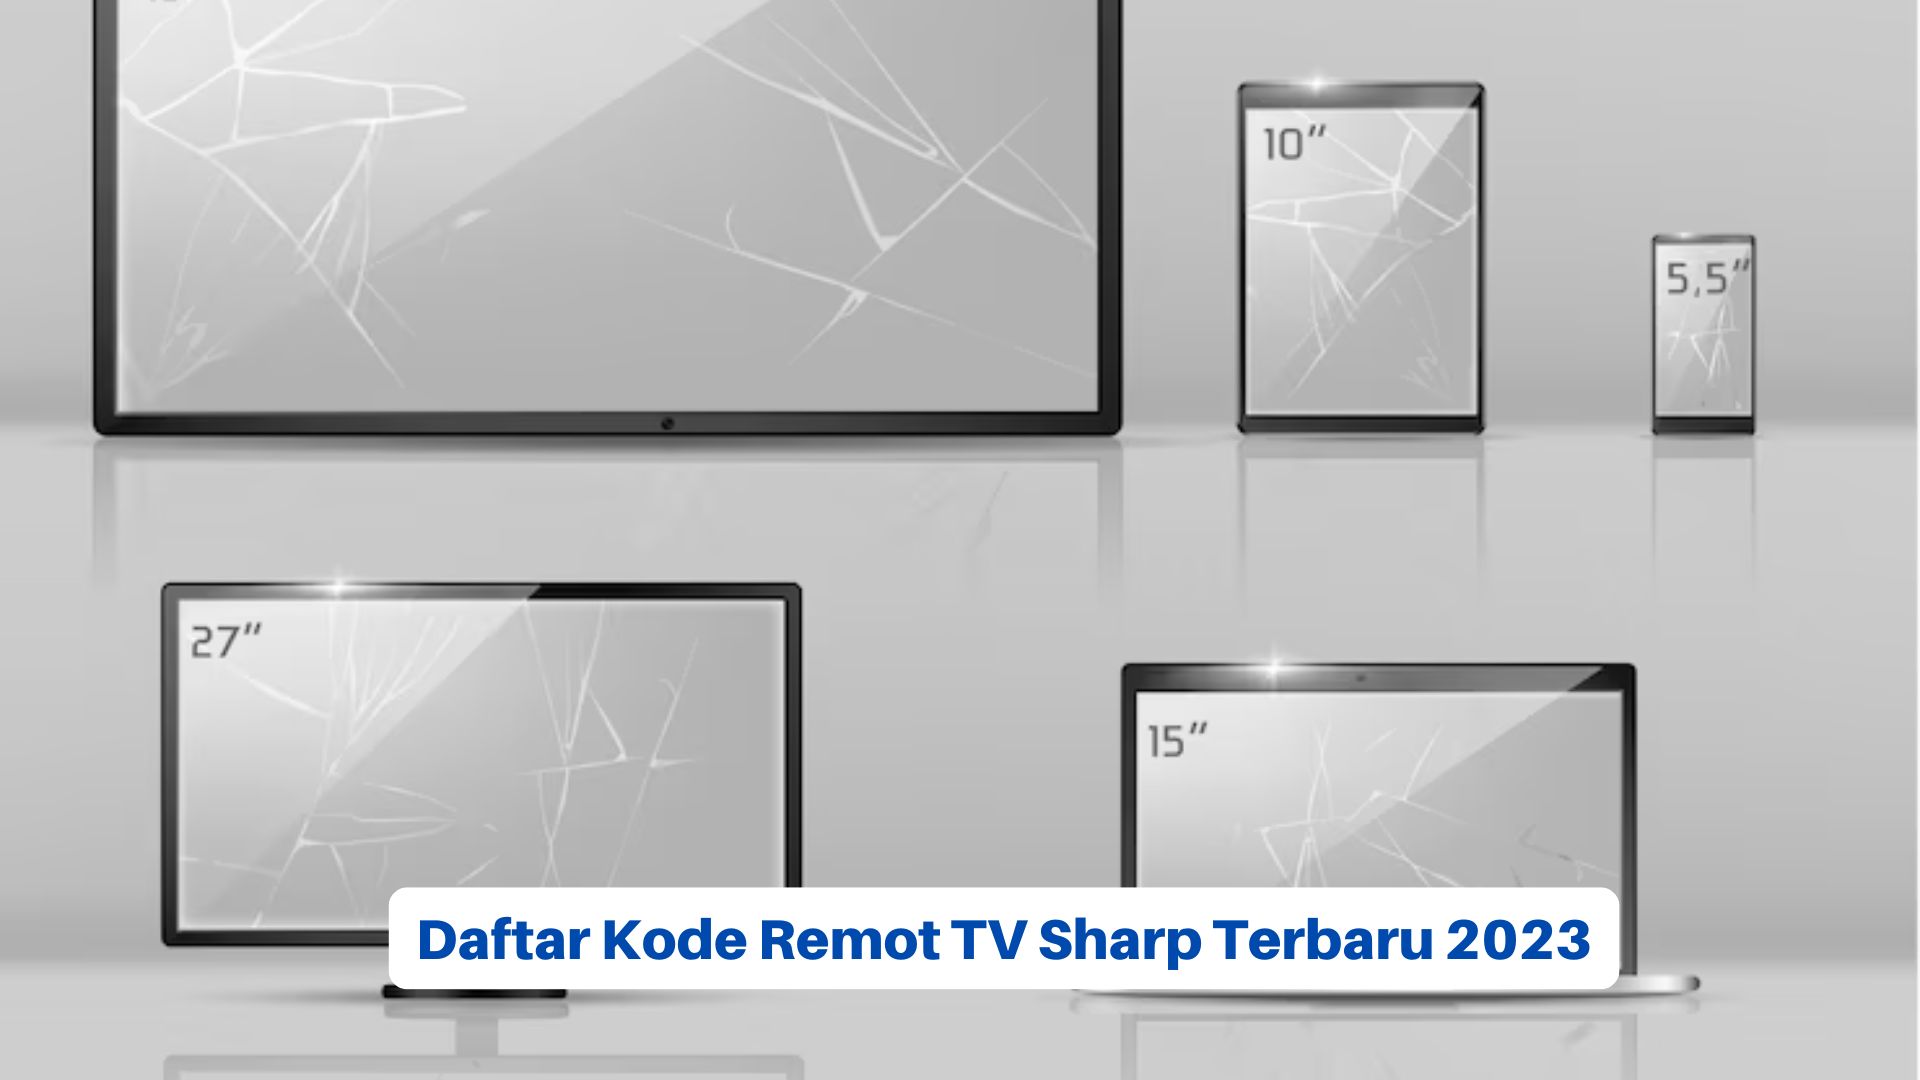 Daftar Kode Remot TV Sharp Terbaru 2023